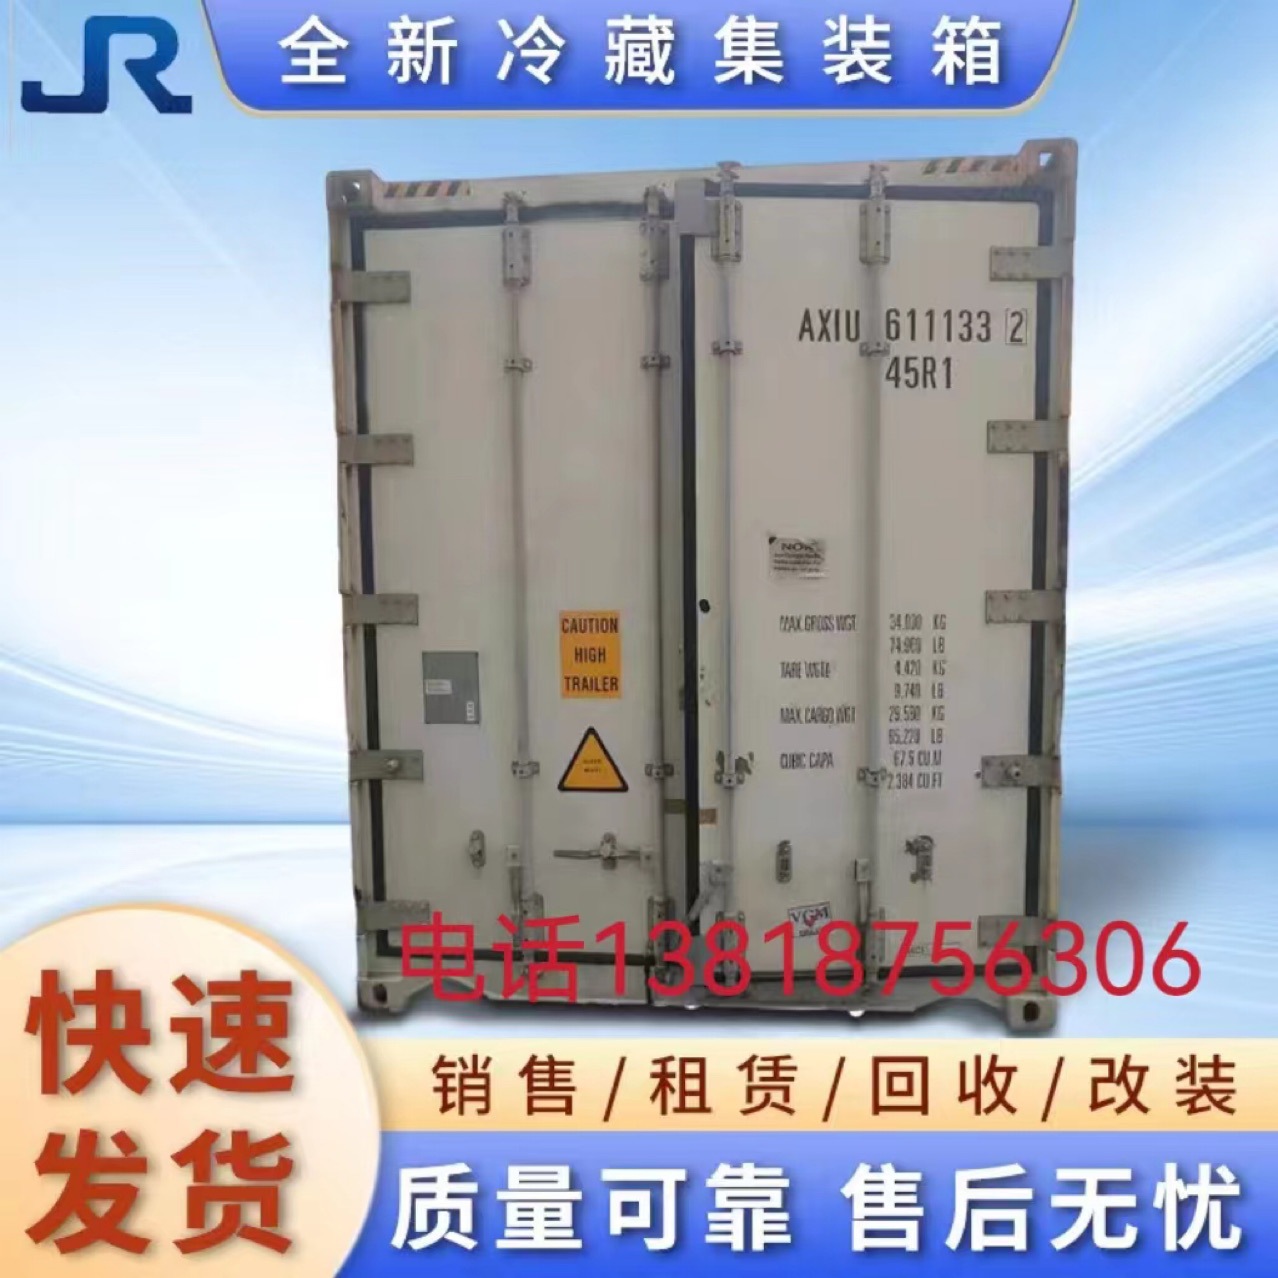 江浙沪地区二手冷藏集装箱出售出租20尺40尺冷藏集装箱价格